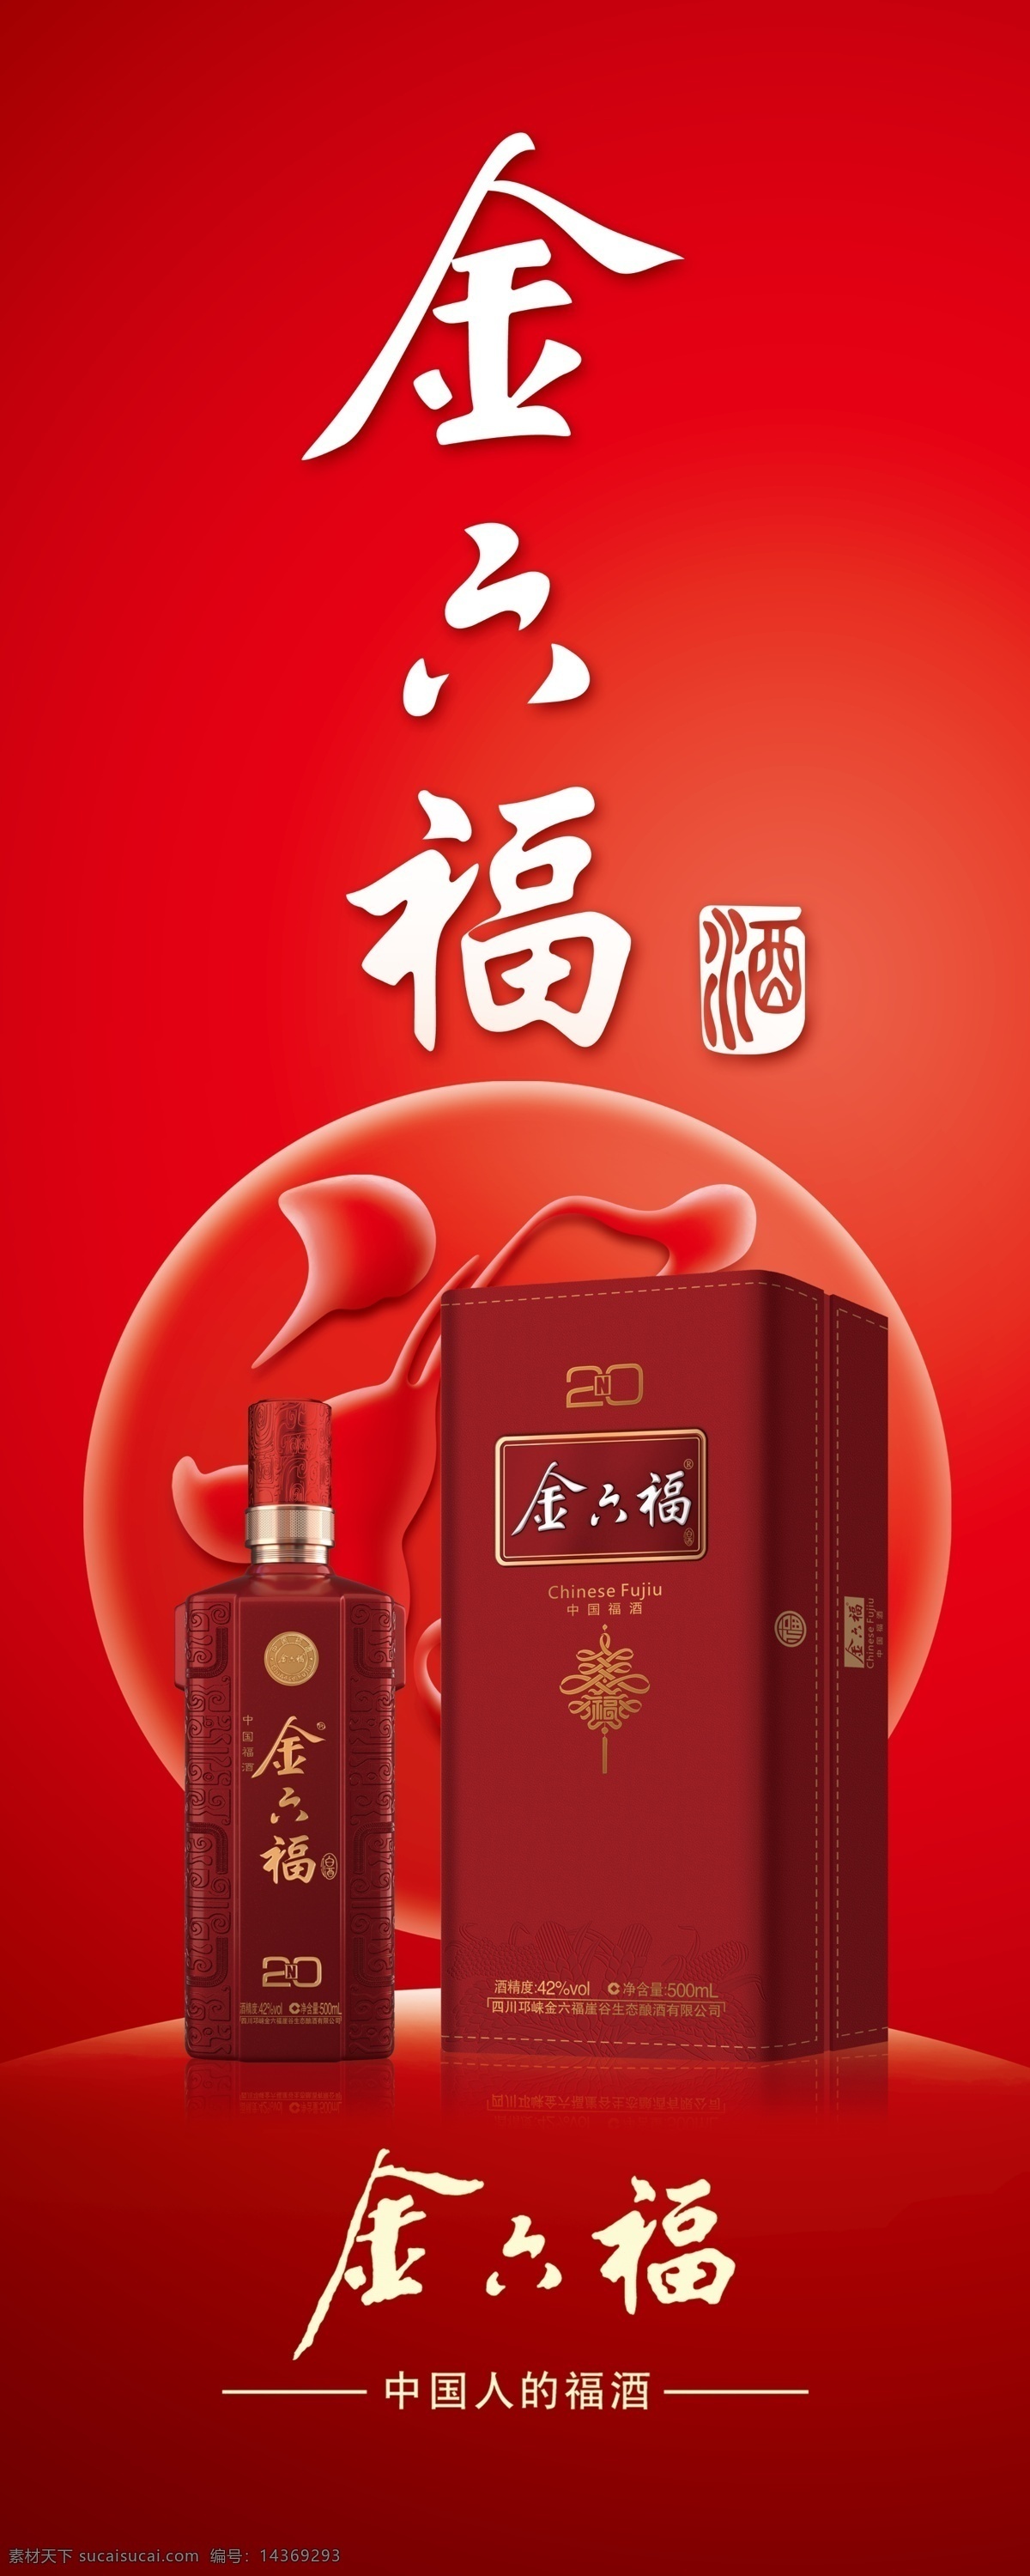 金六福 白酒 酱香型 福 红色背景 高清大图 酒瓶 酒盒